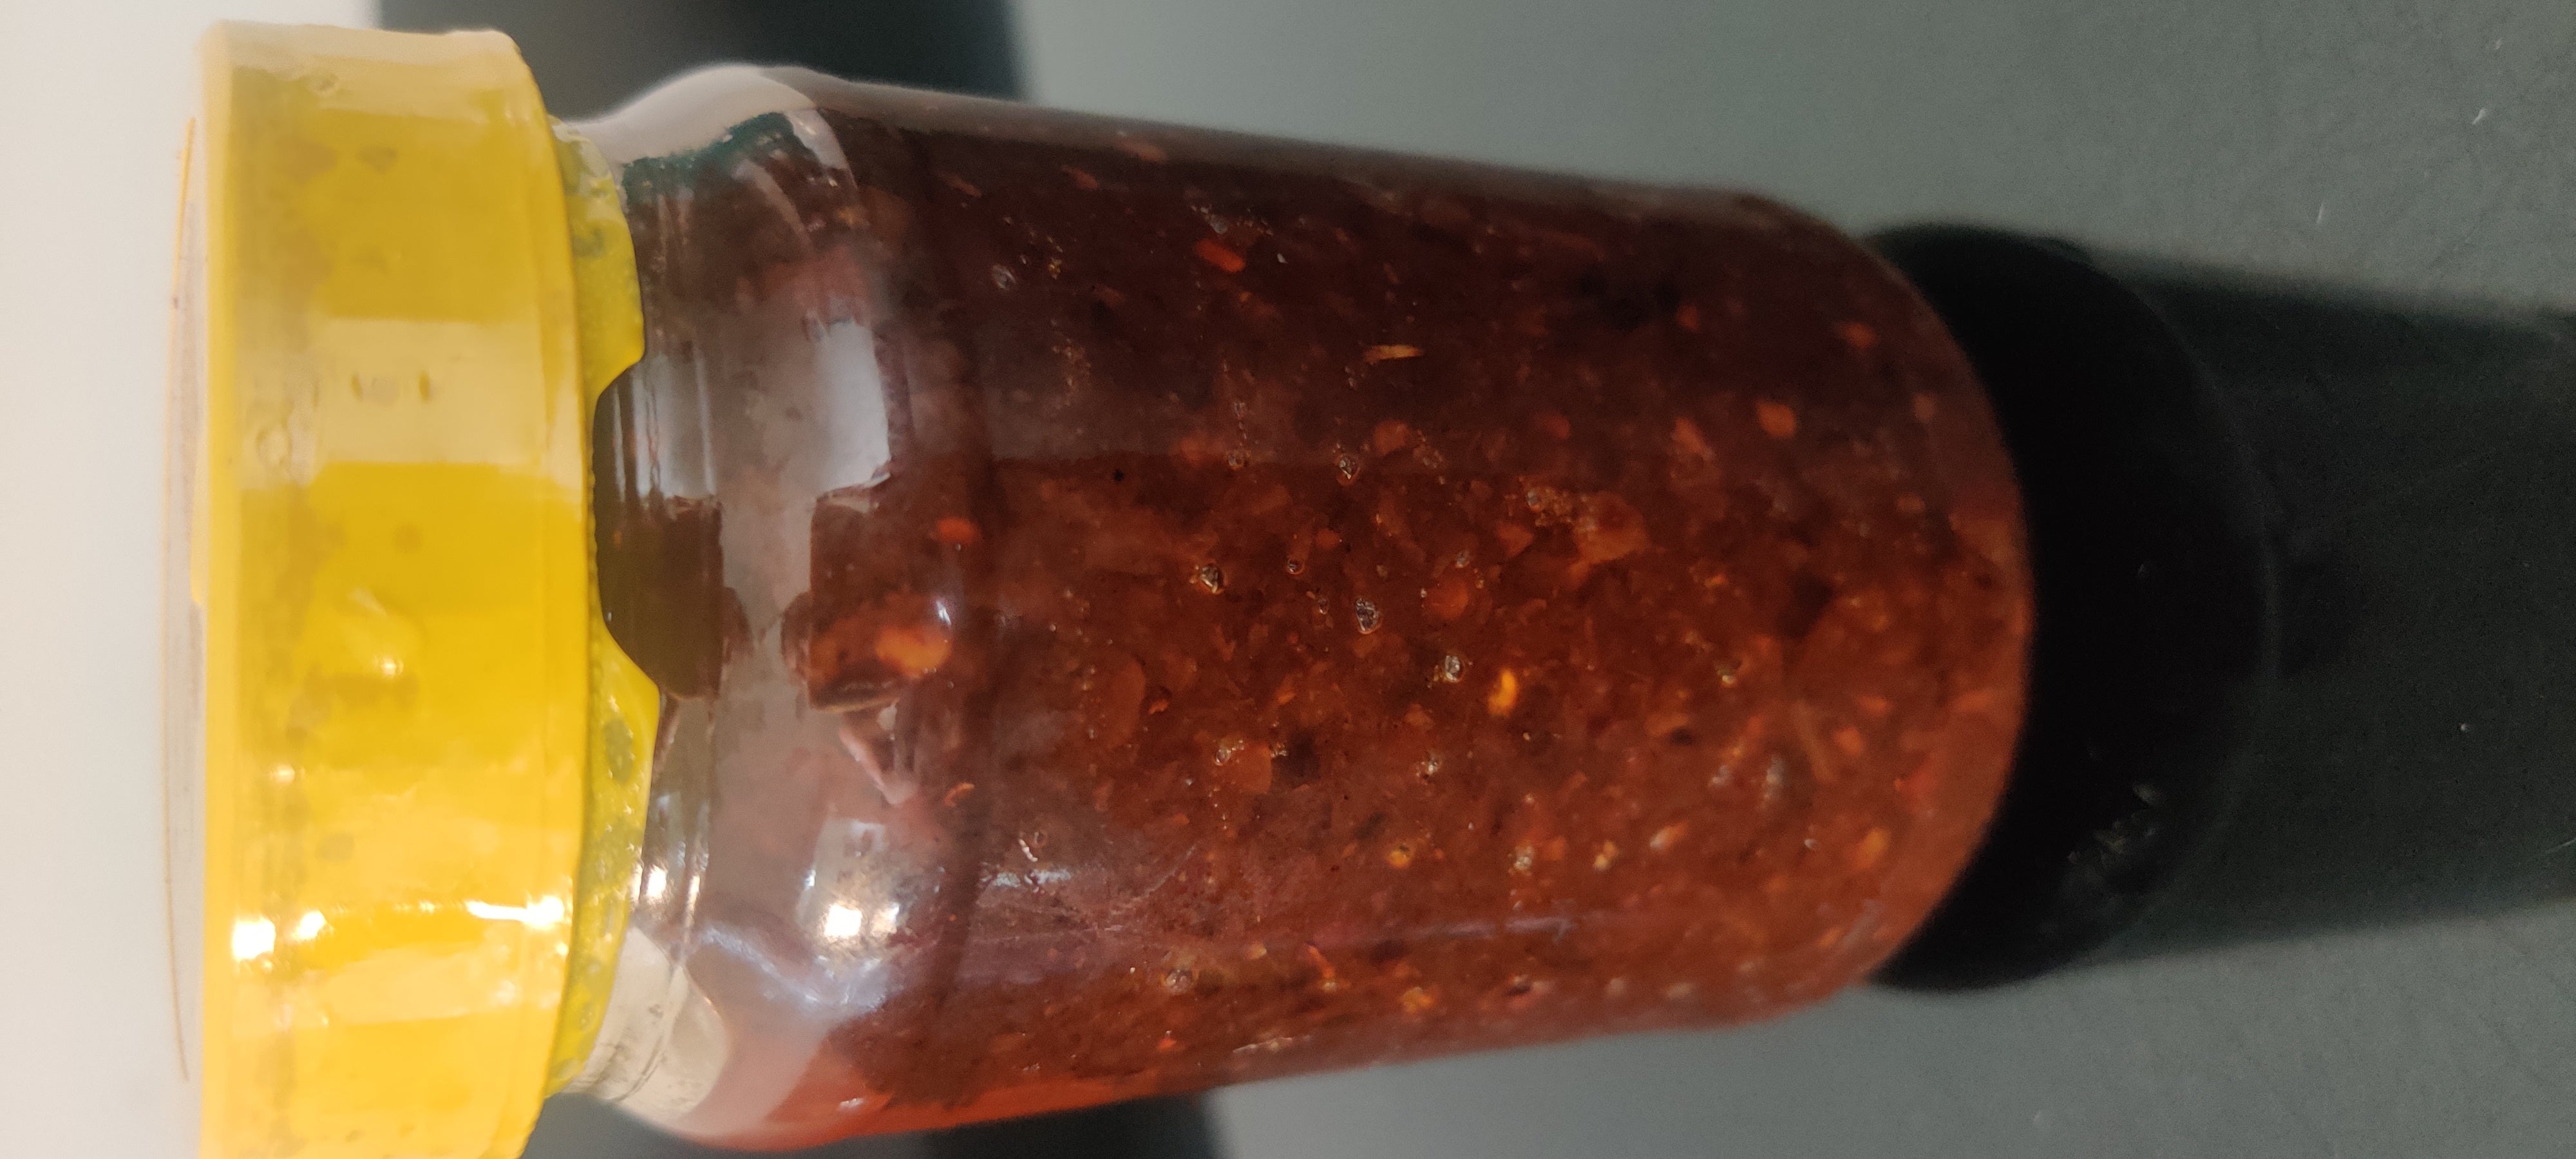 Authentic Chili Garlic Sauce